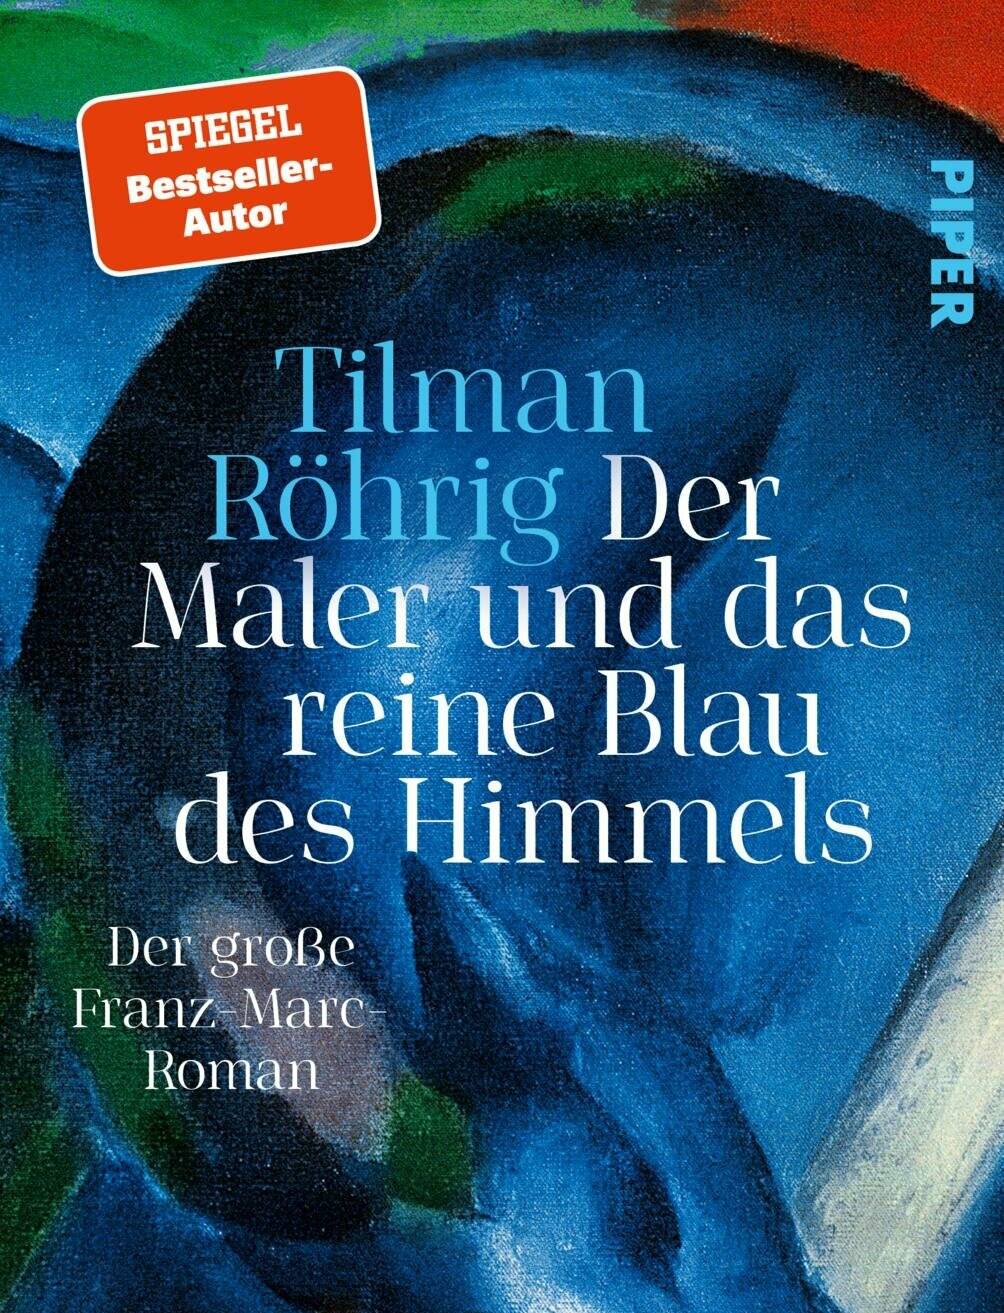  „Der Maler und das reine Blau des Himmels“ von Tilman Röhrig ist im Piper-Verlag erschienen, 527 Seiten dick und kostet 26 Euro. 